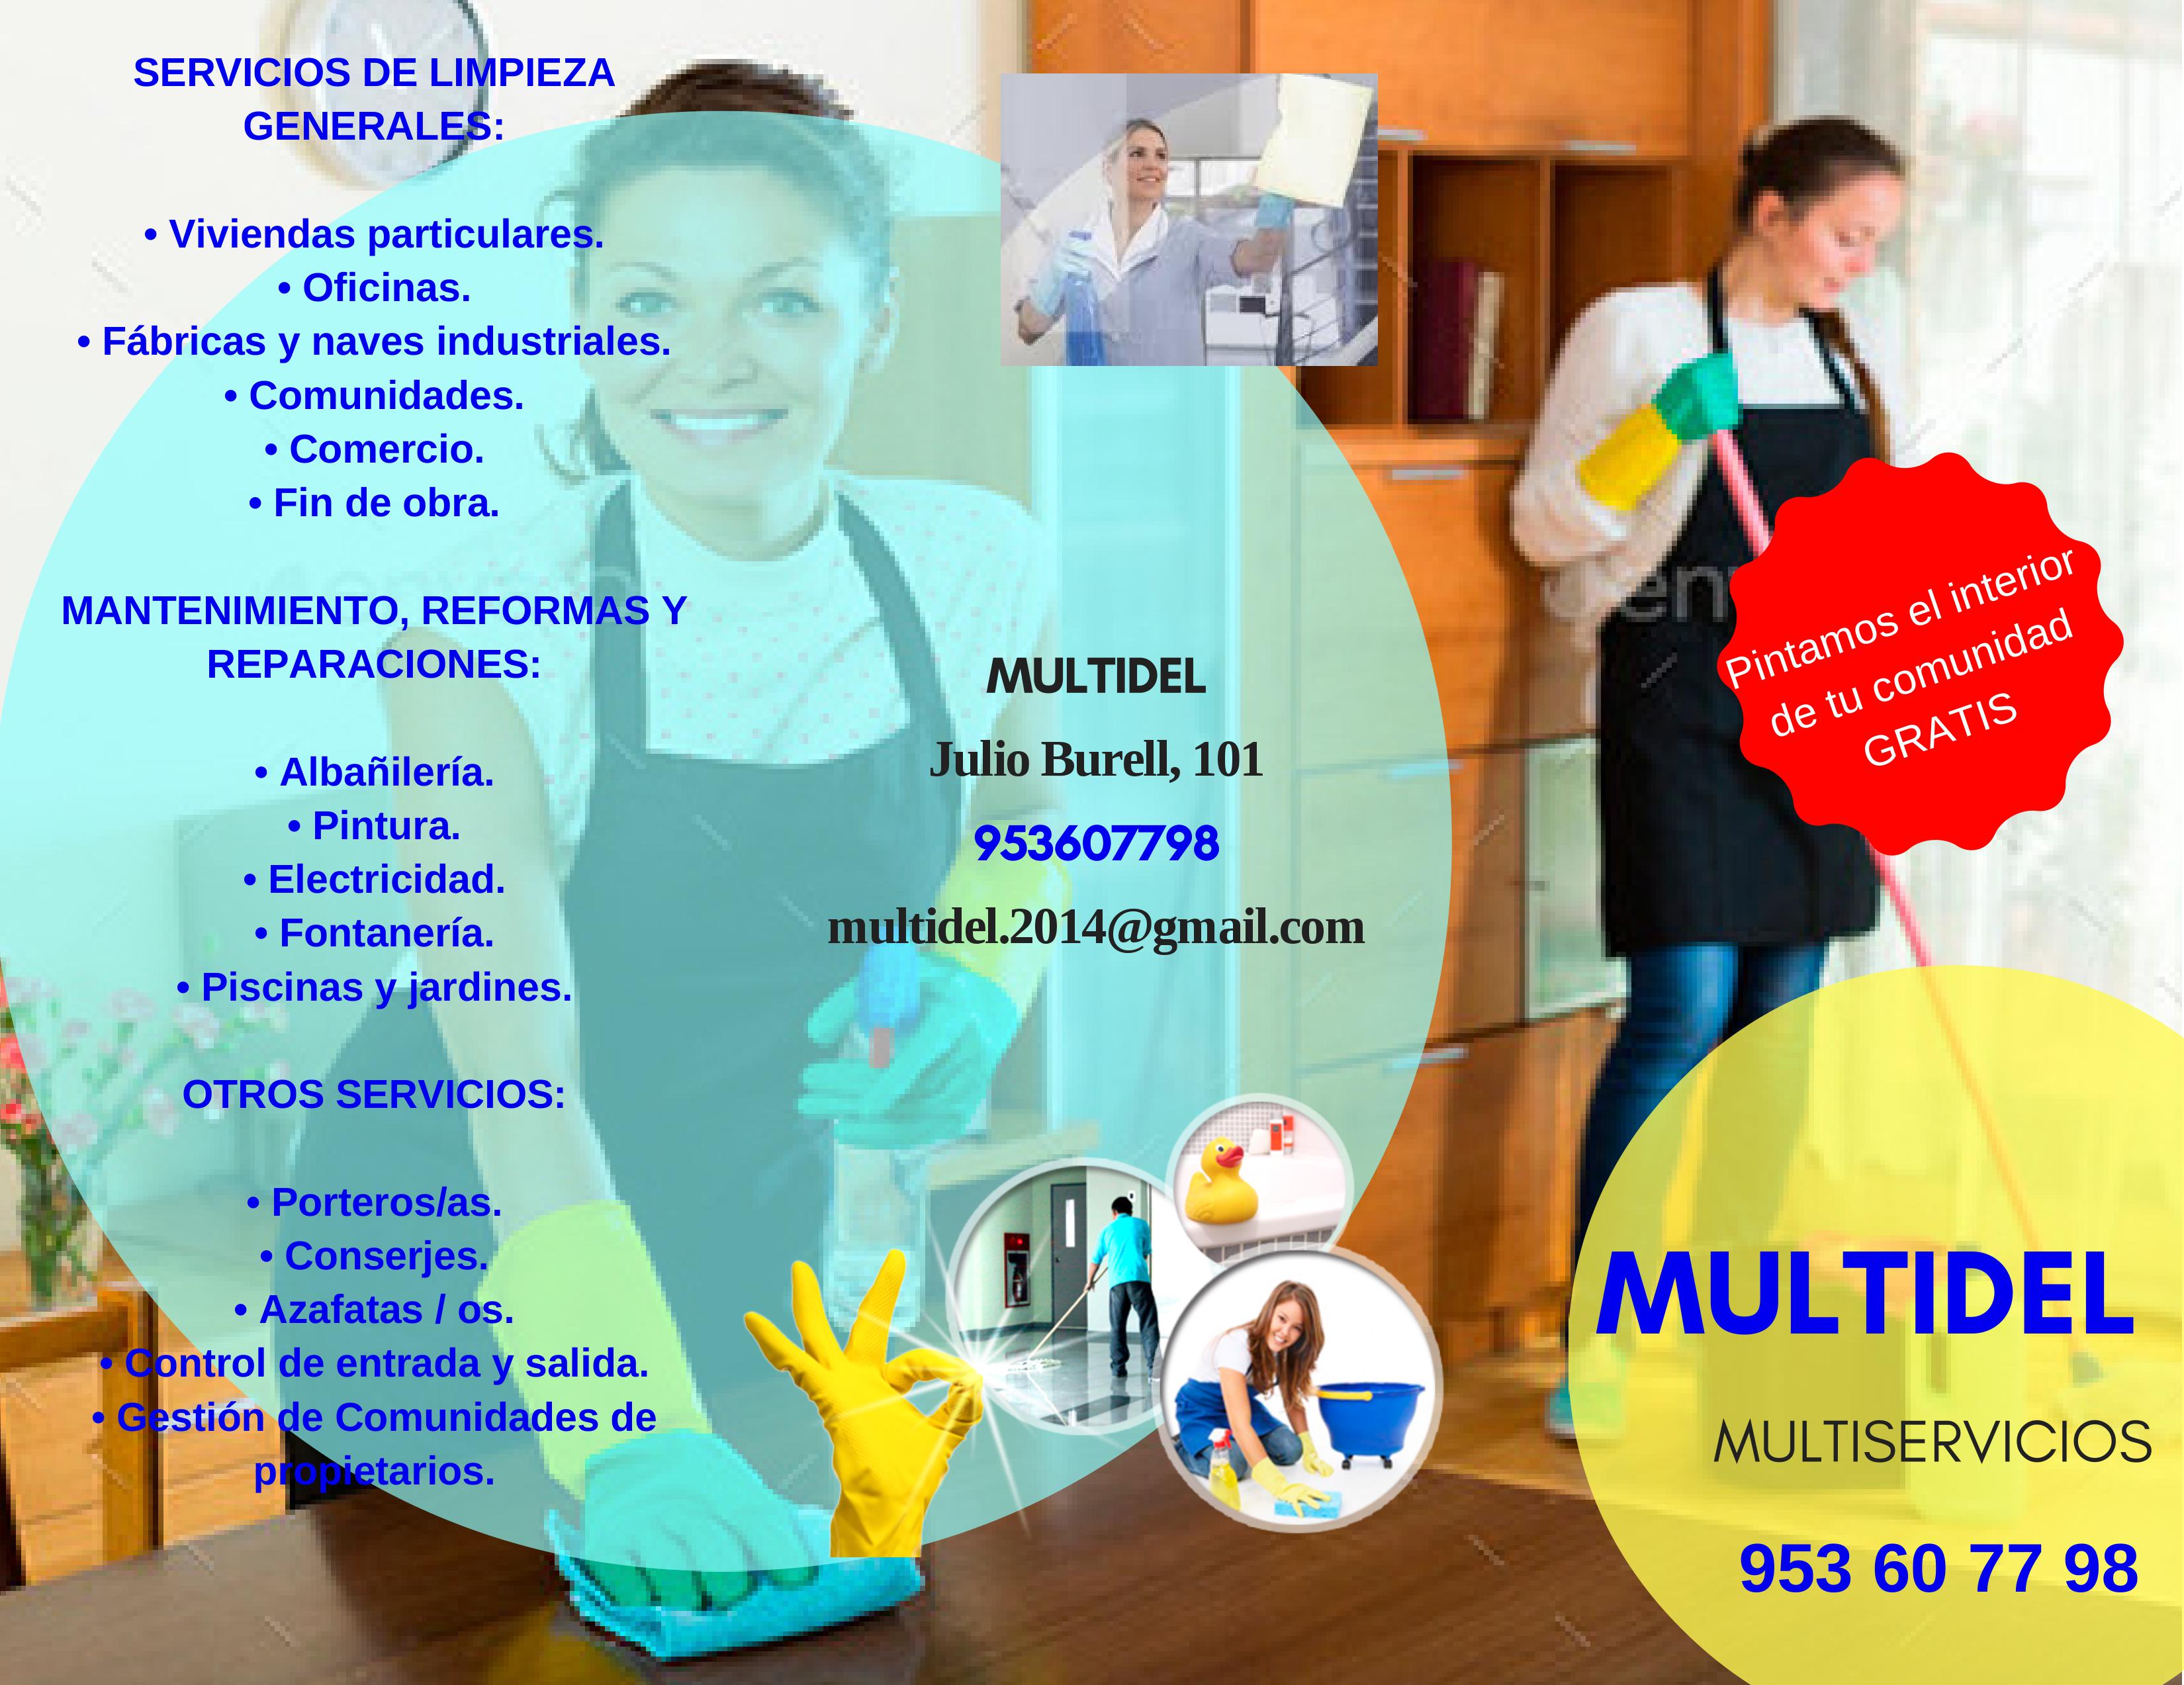 Images Multiservicios MultiDel